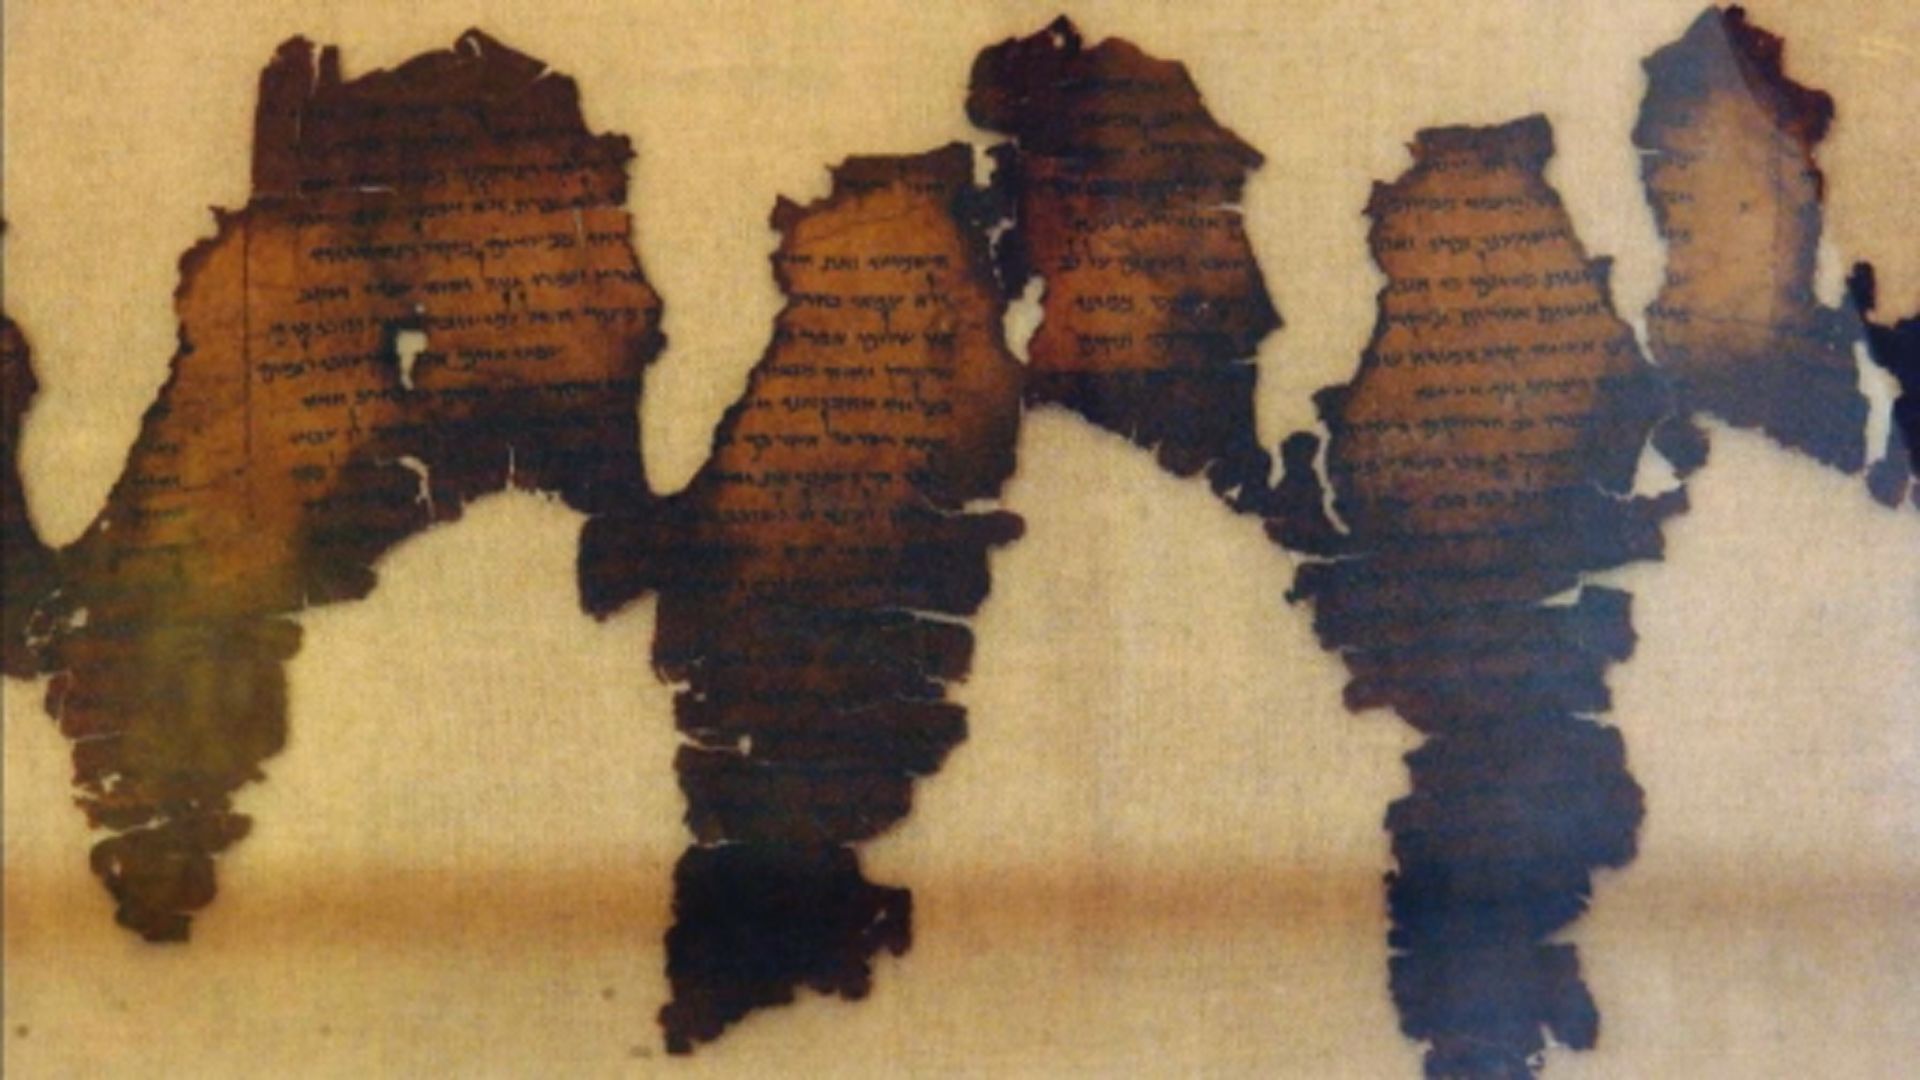 【環球薈報】聖經博物館五件死海古卷手稿屬膺品